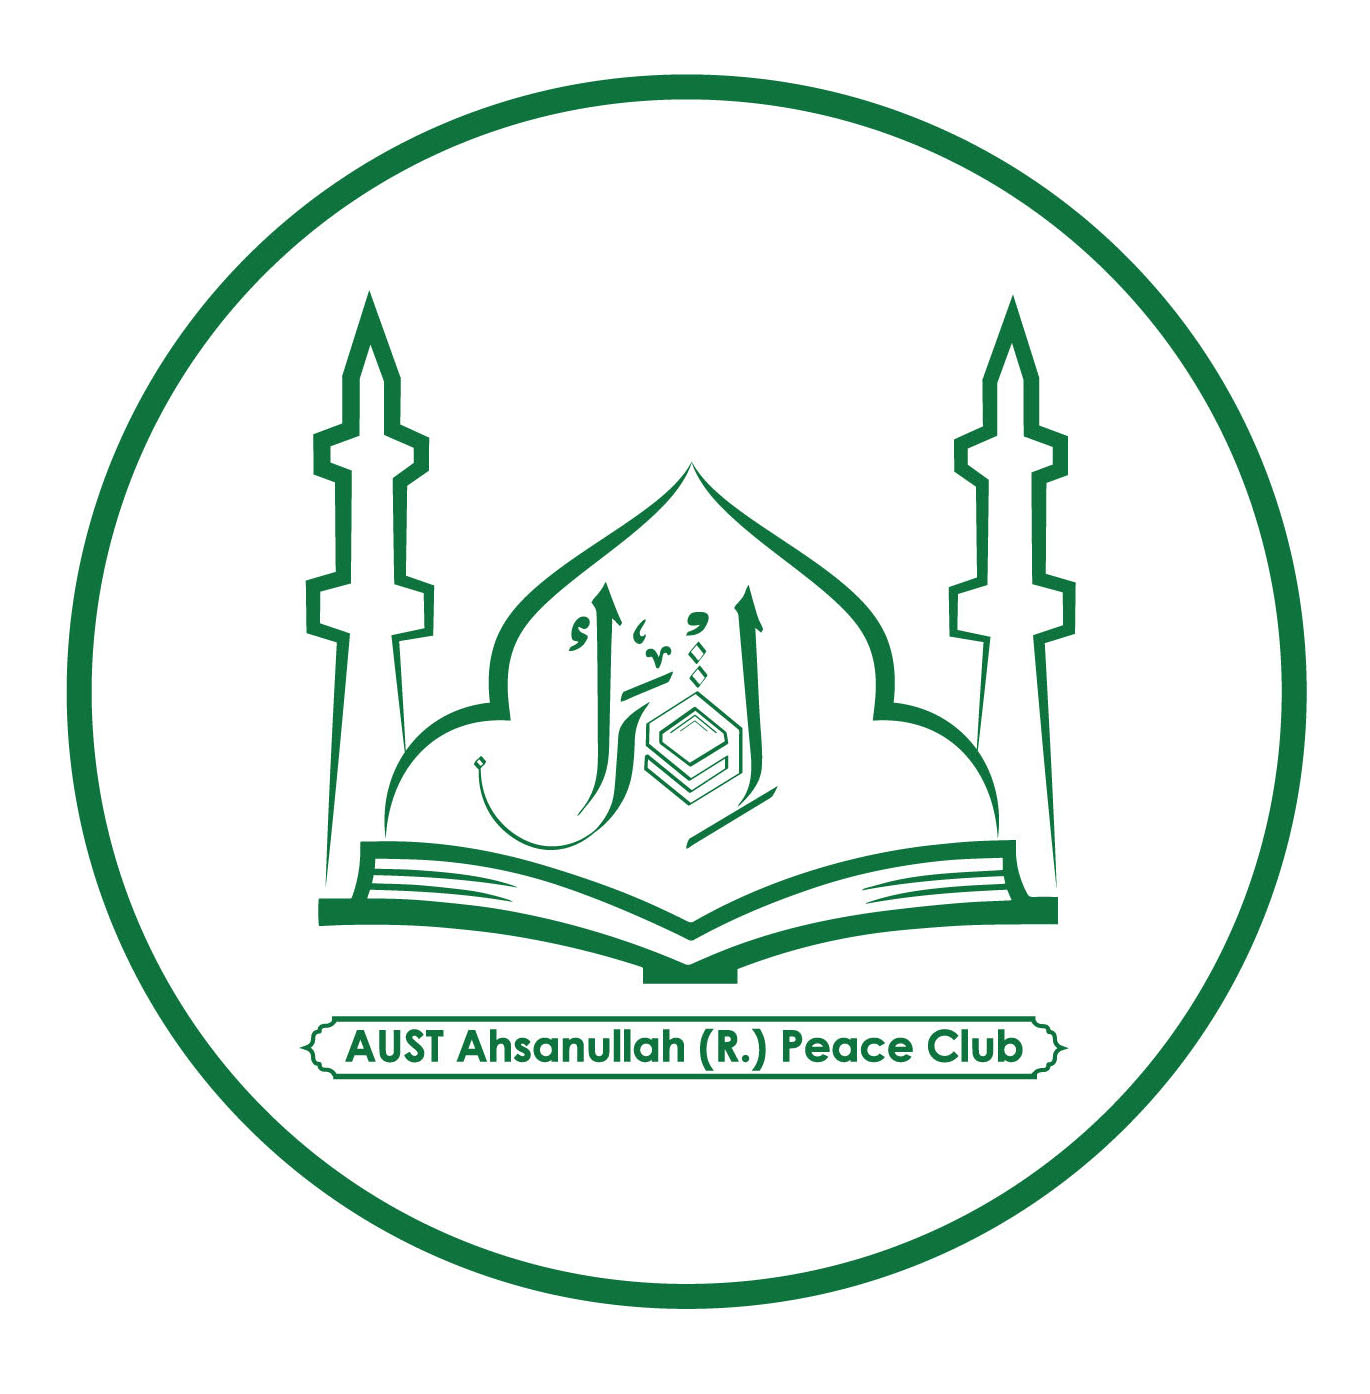 AUST Ahsanullah (R.) Peace Club (AUSTARPC)